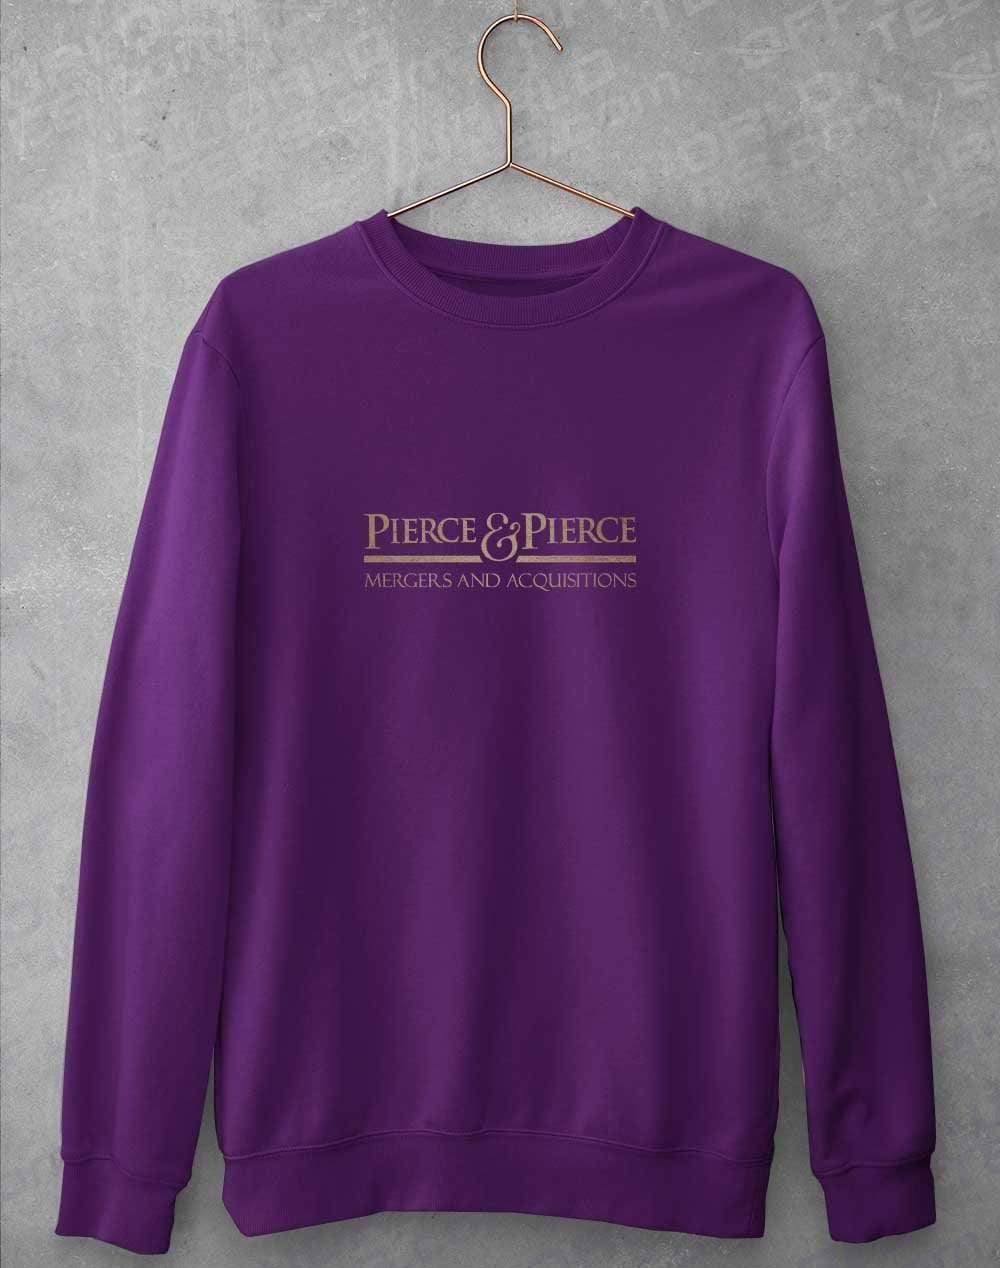 Pierce and Pierce Sweatshirt S / Purple  - Off World Tees